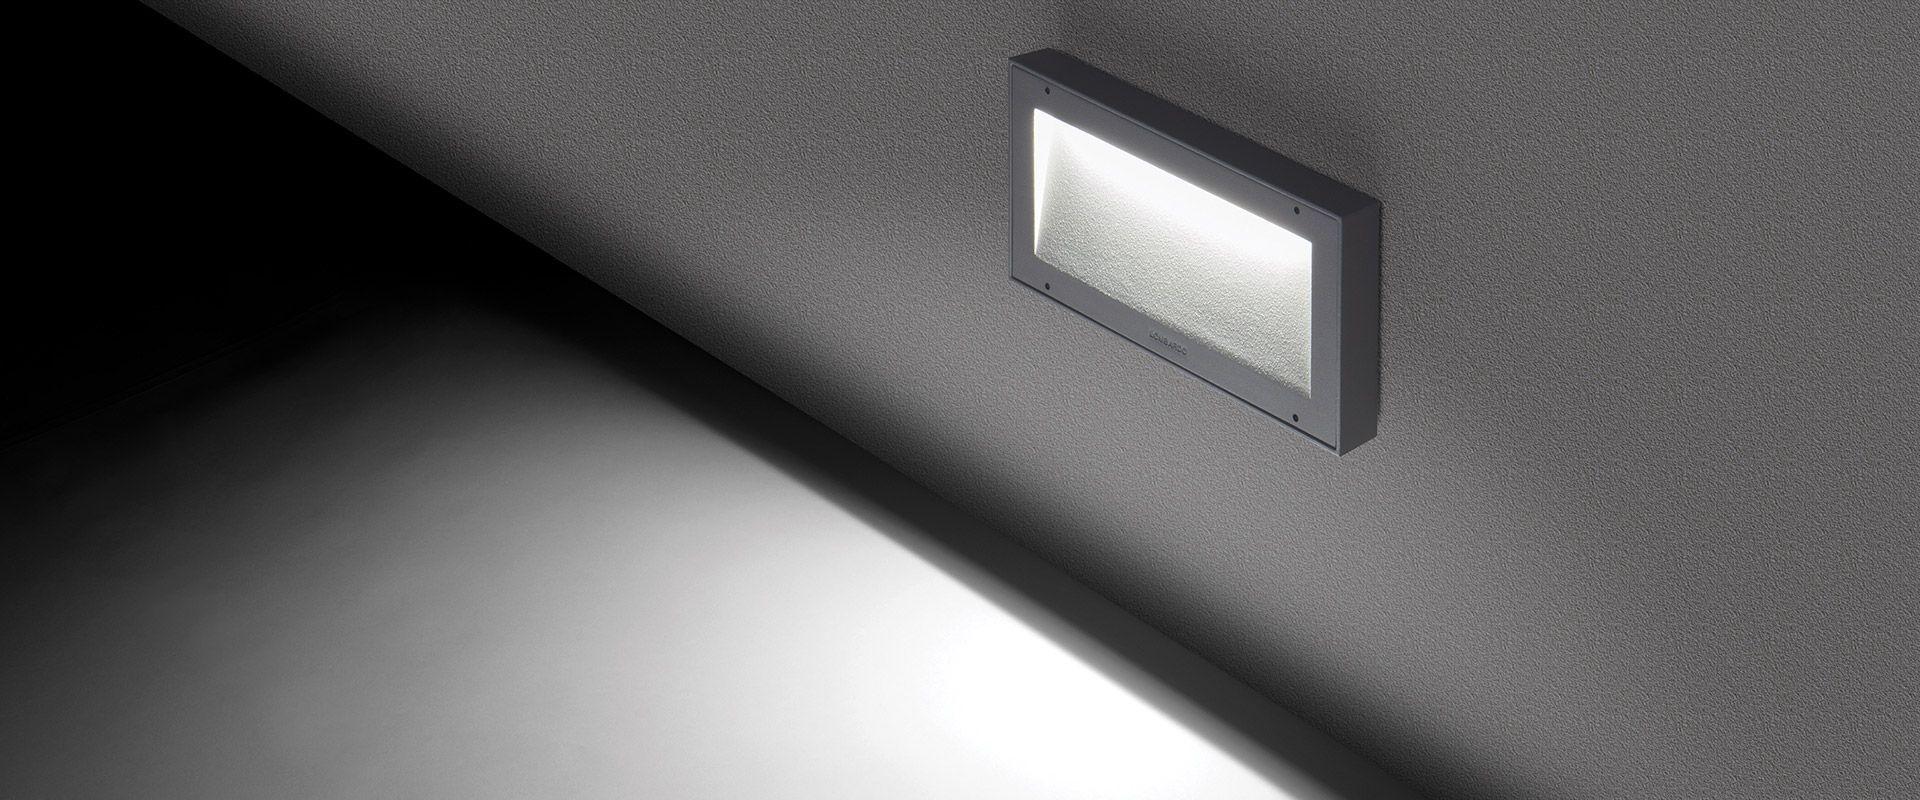 Luce segnapasso LED LOMBARDO KOI 220, 9W, 1300 lumen, colore luce bianco naturale 4000K, colore scocca grigio high tech